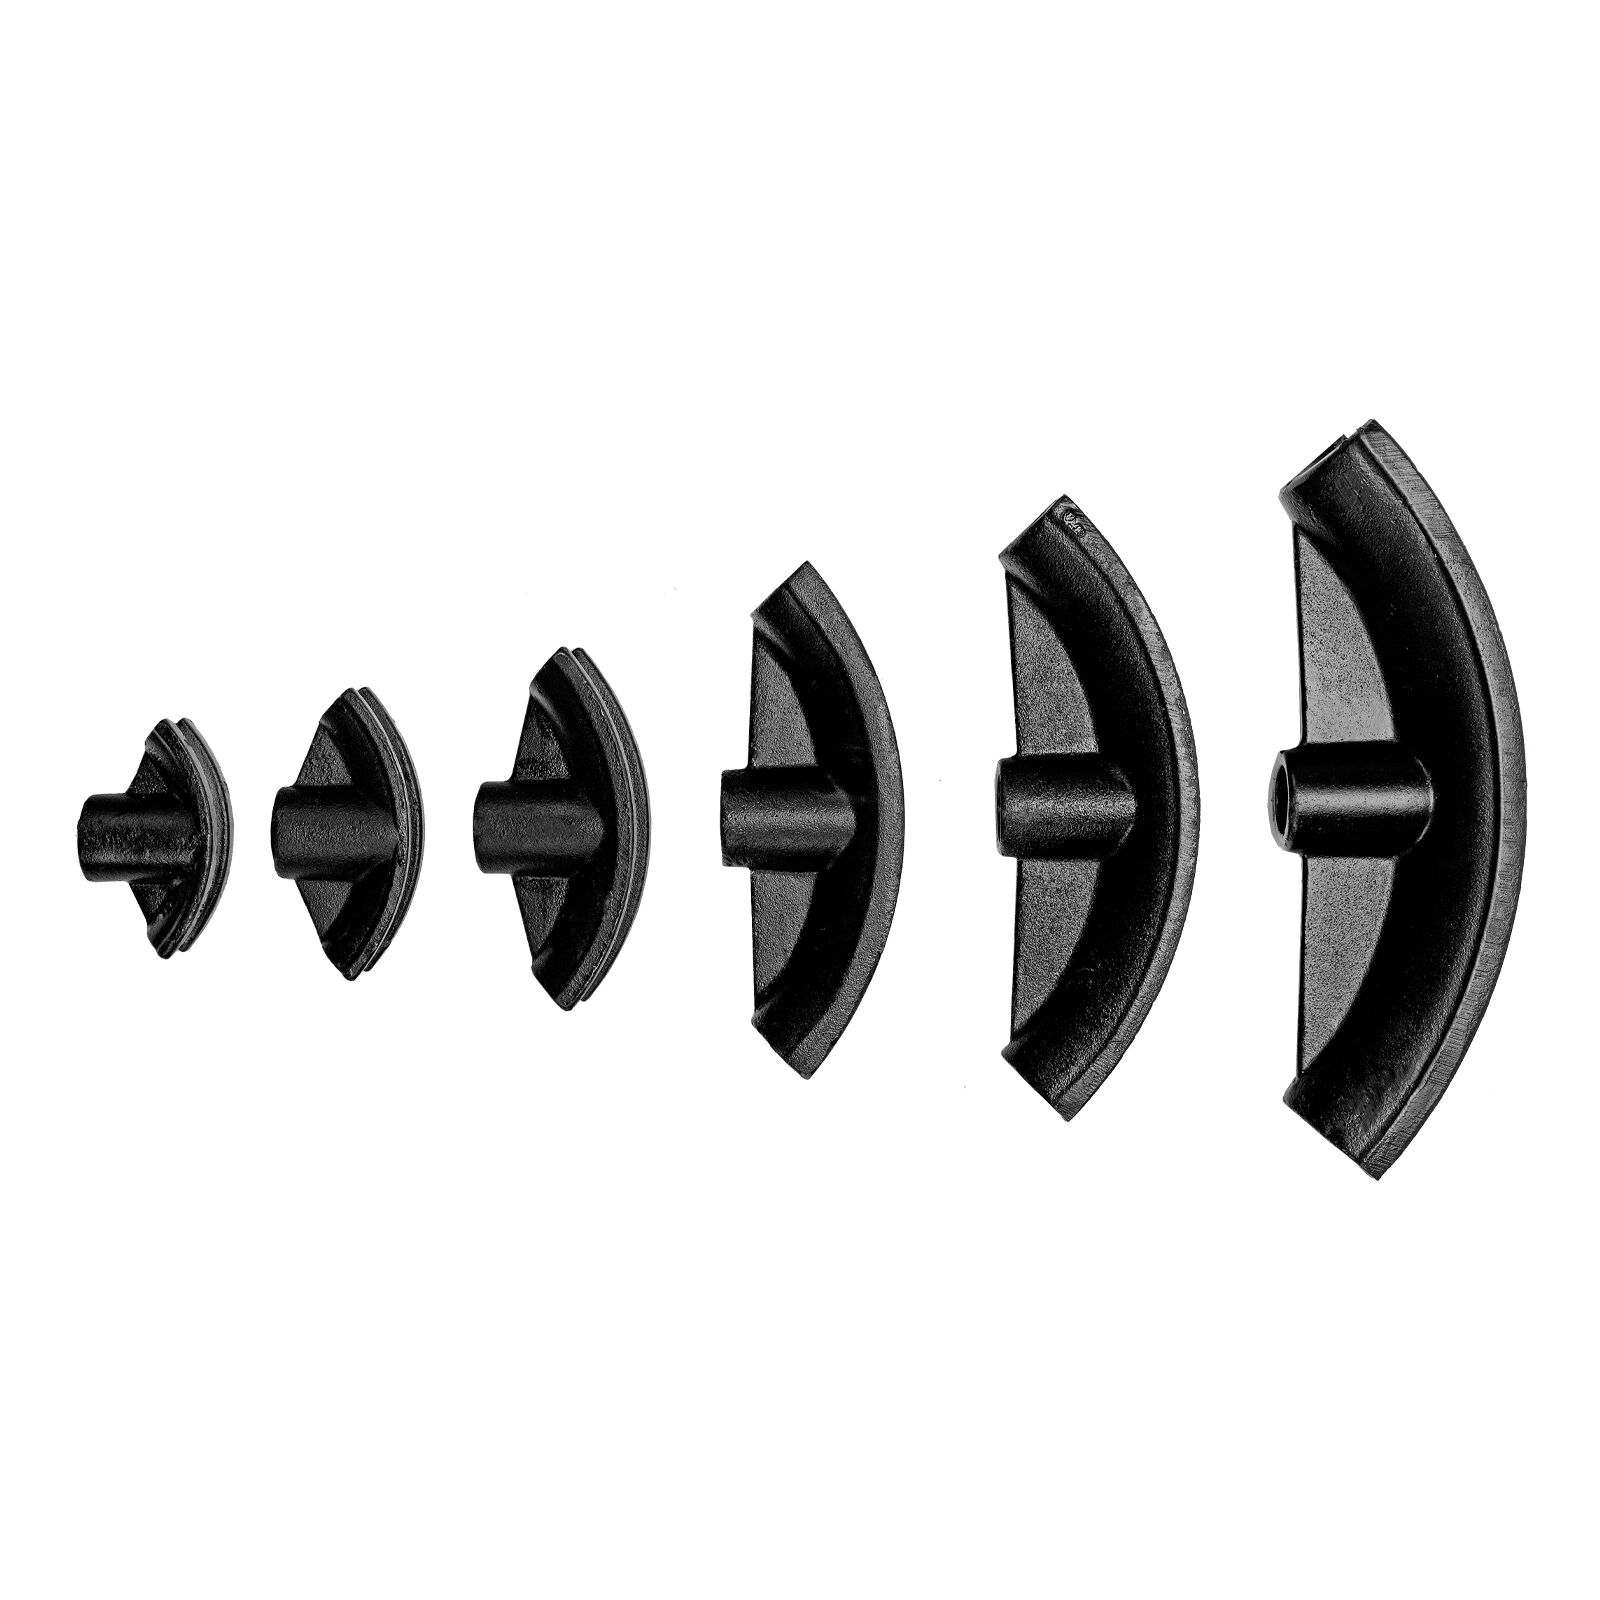 Гидравлический горизонтальный трубогиб Stels 18151 с башмаками 1/2"–2" 10